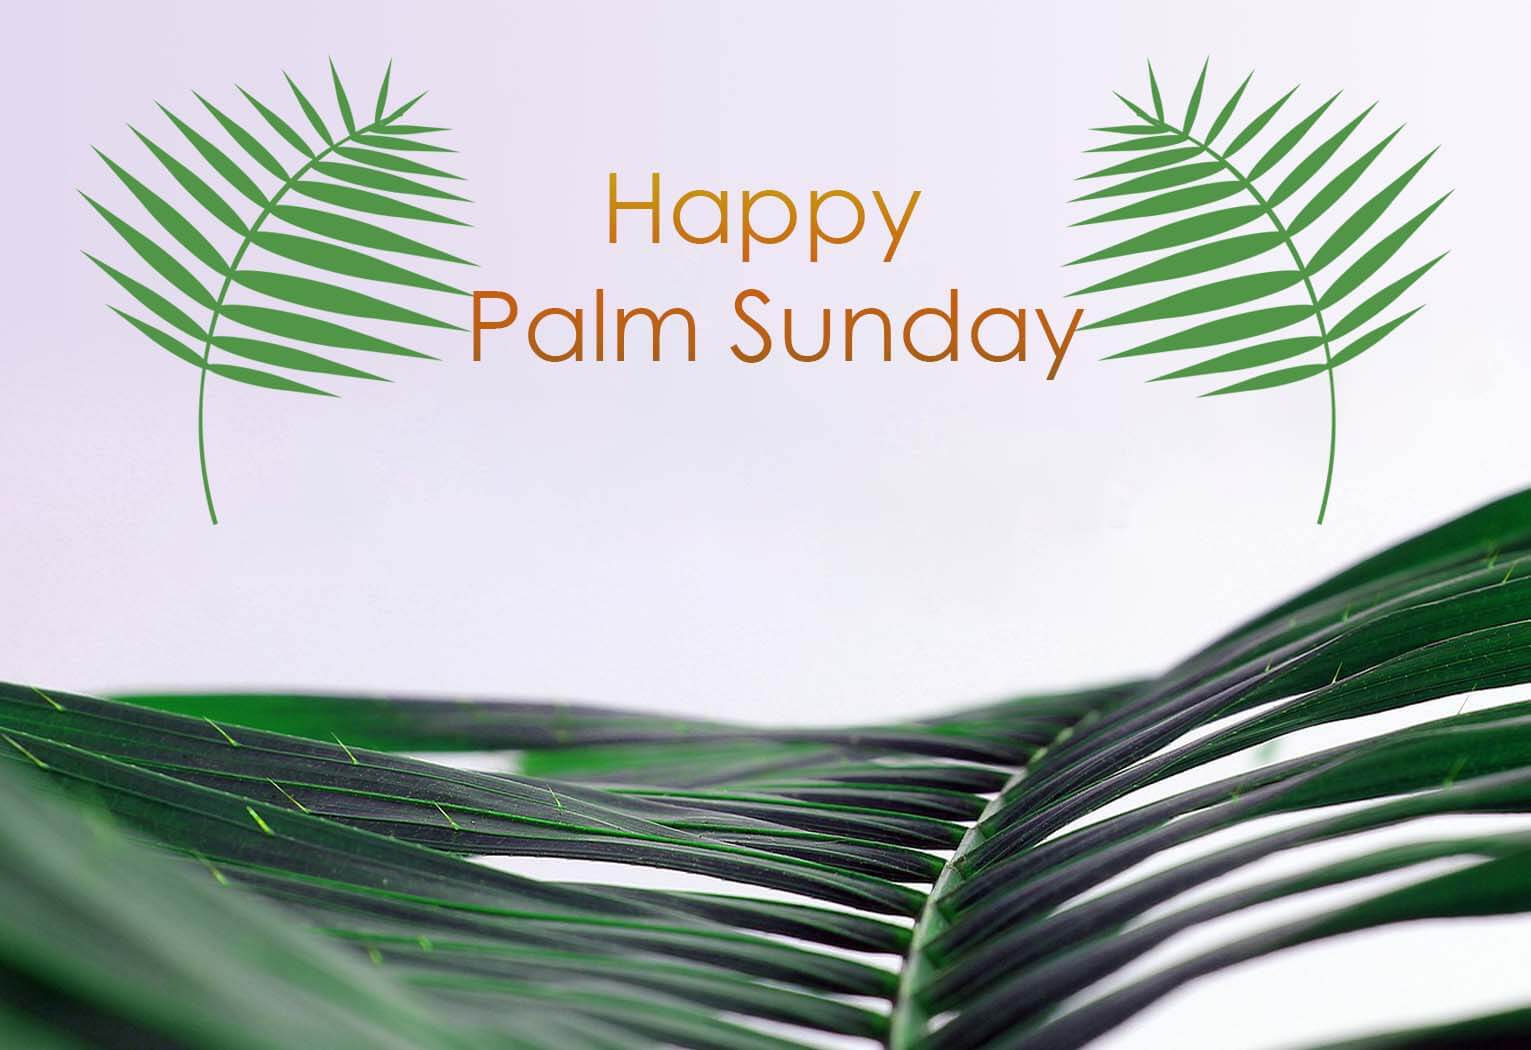 happy palm sunday 2023 images